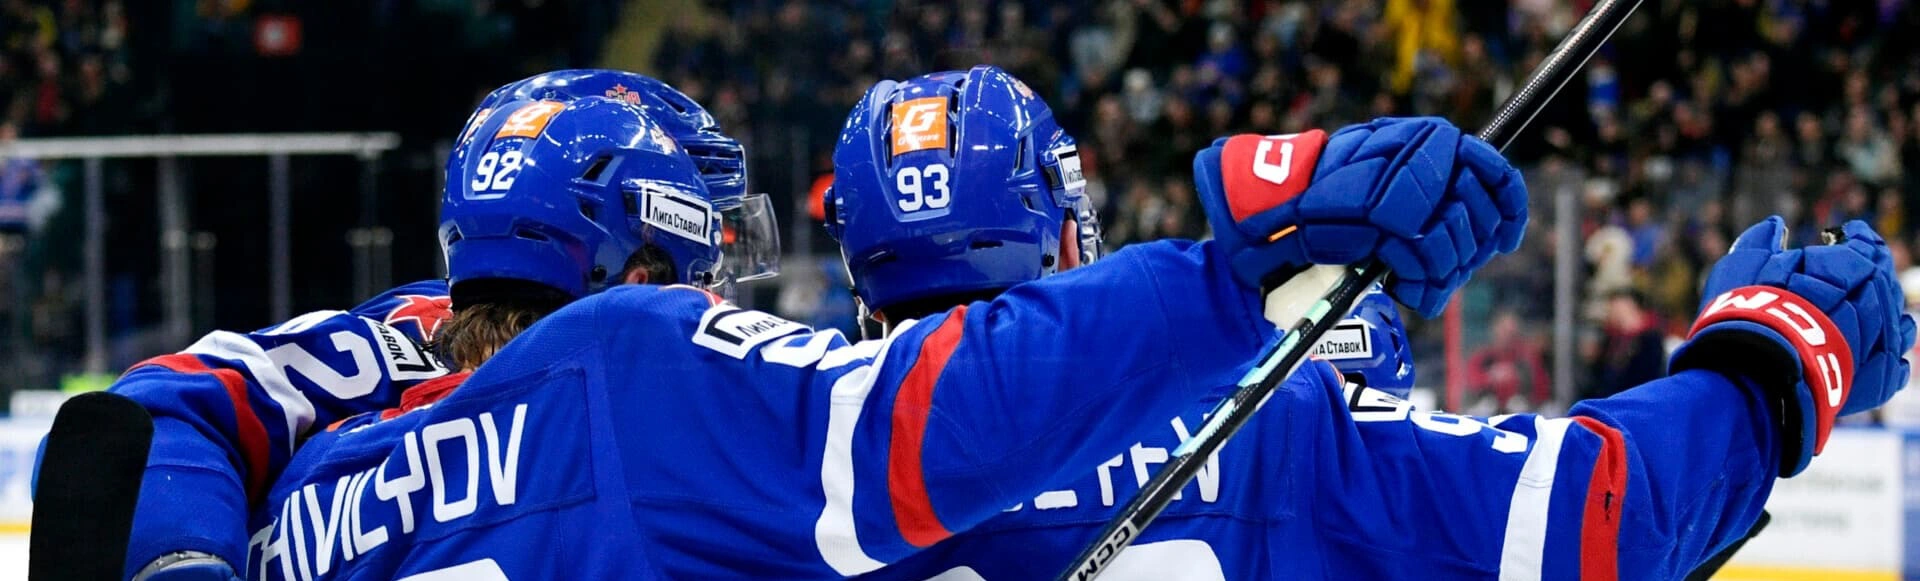 Хоккеисты СКА добились домашней победы, побеждая московский ЦСКА со счетом 2:1.